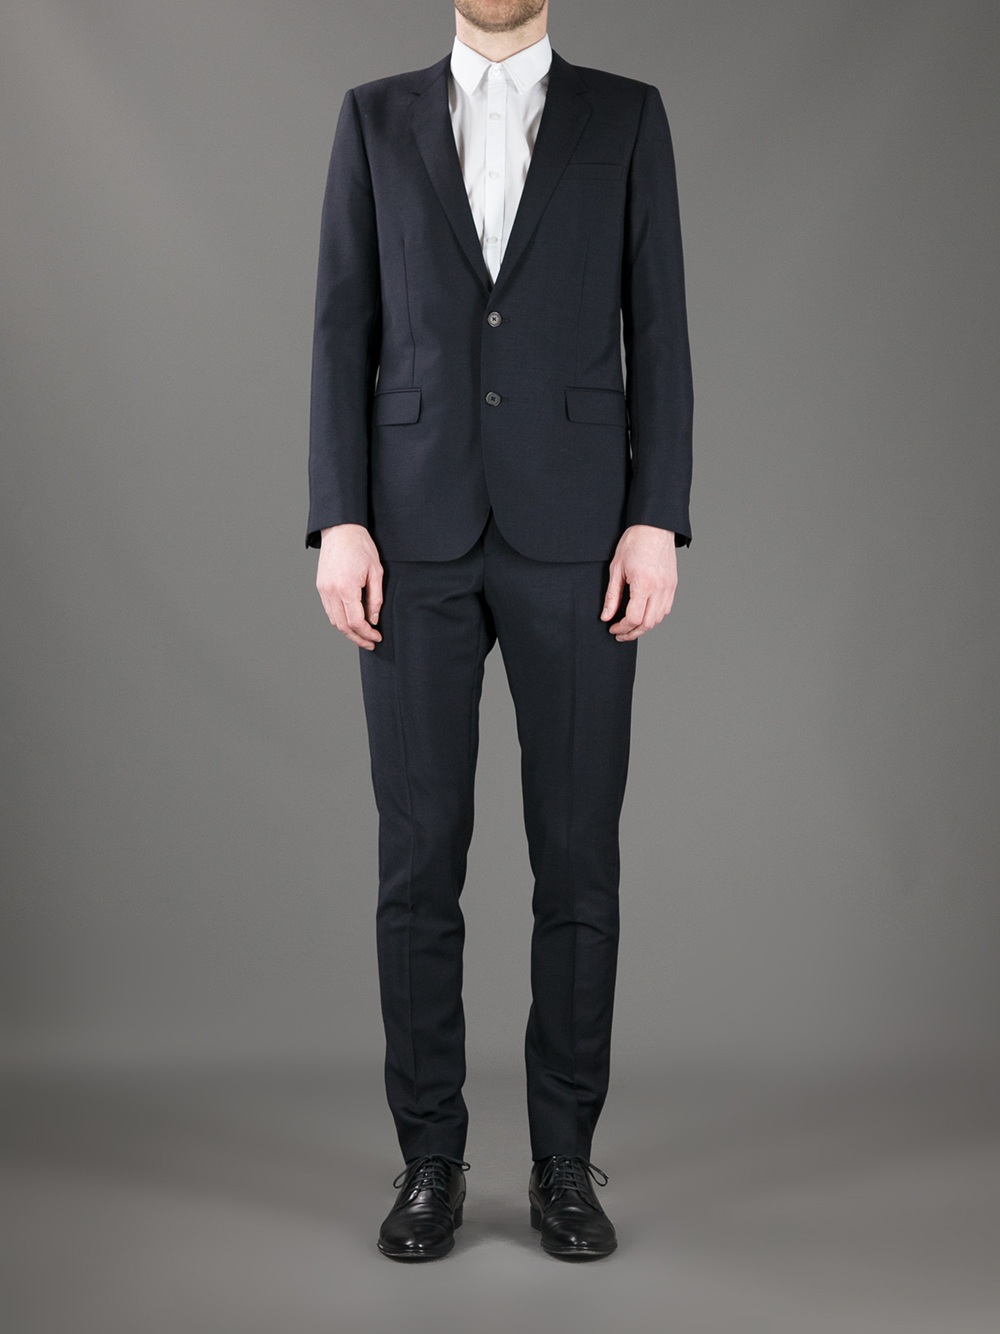 Lyst - Saint Laurent Classic Suit in Blue for Men